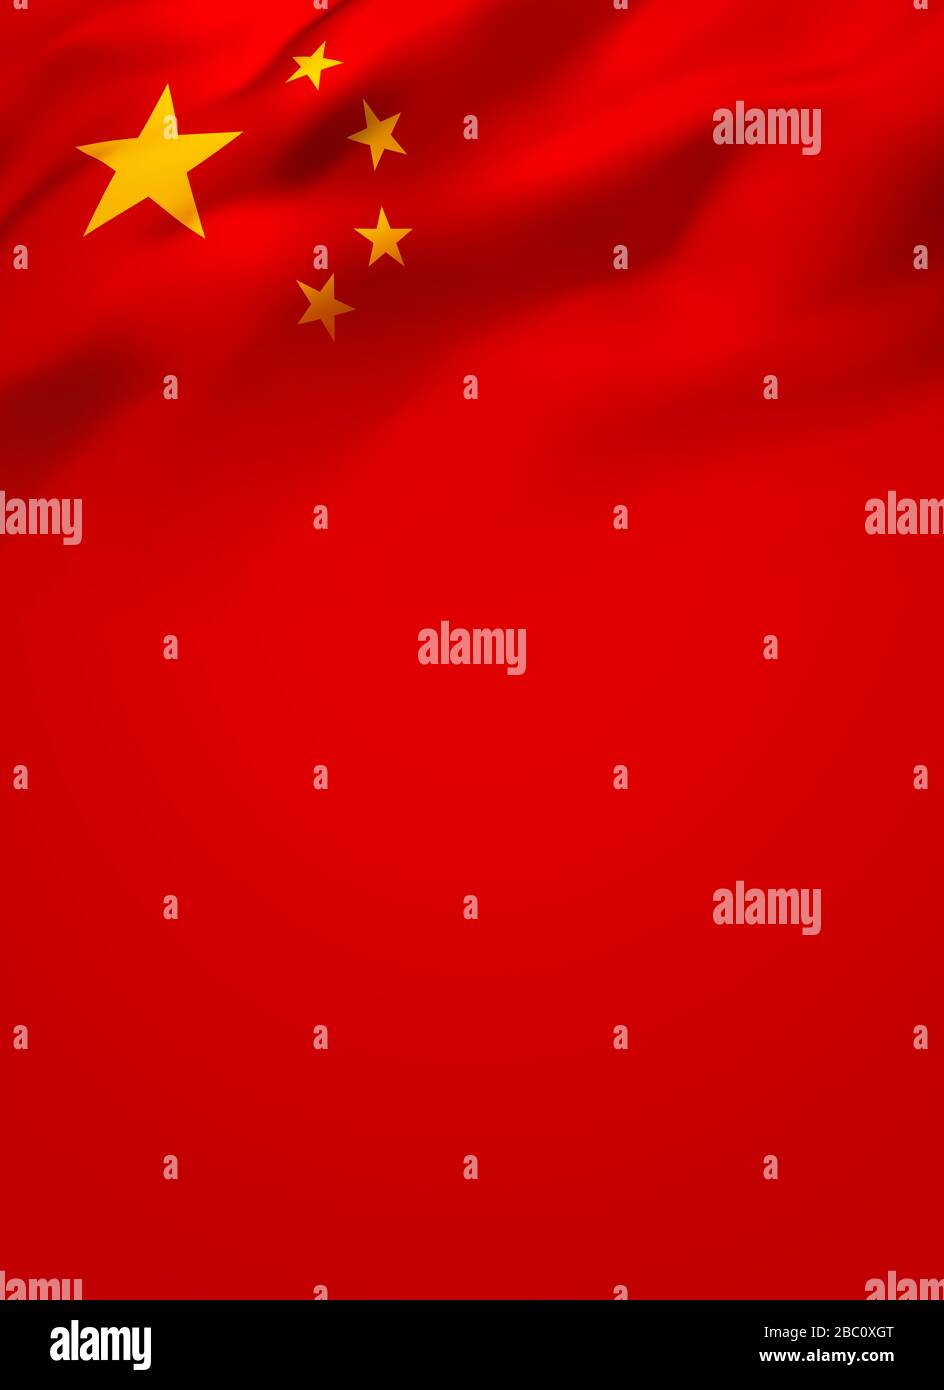 Flagge der Republik China weht im Wind, ganzseitiges Deckblatt Hintergrund. Broschüre, Flyer, Poster, Banner Designvorlage. Stockfoto